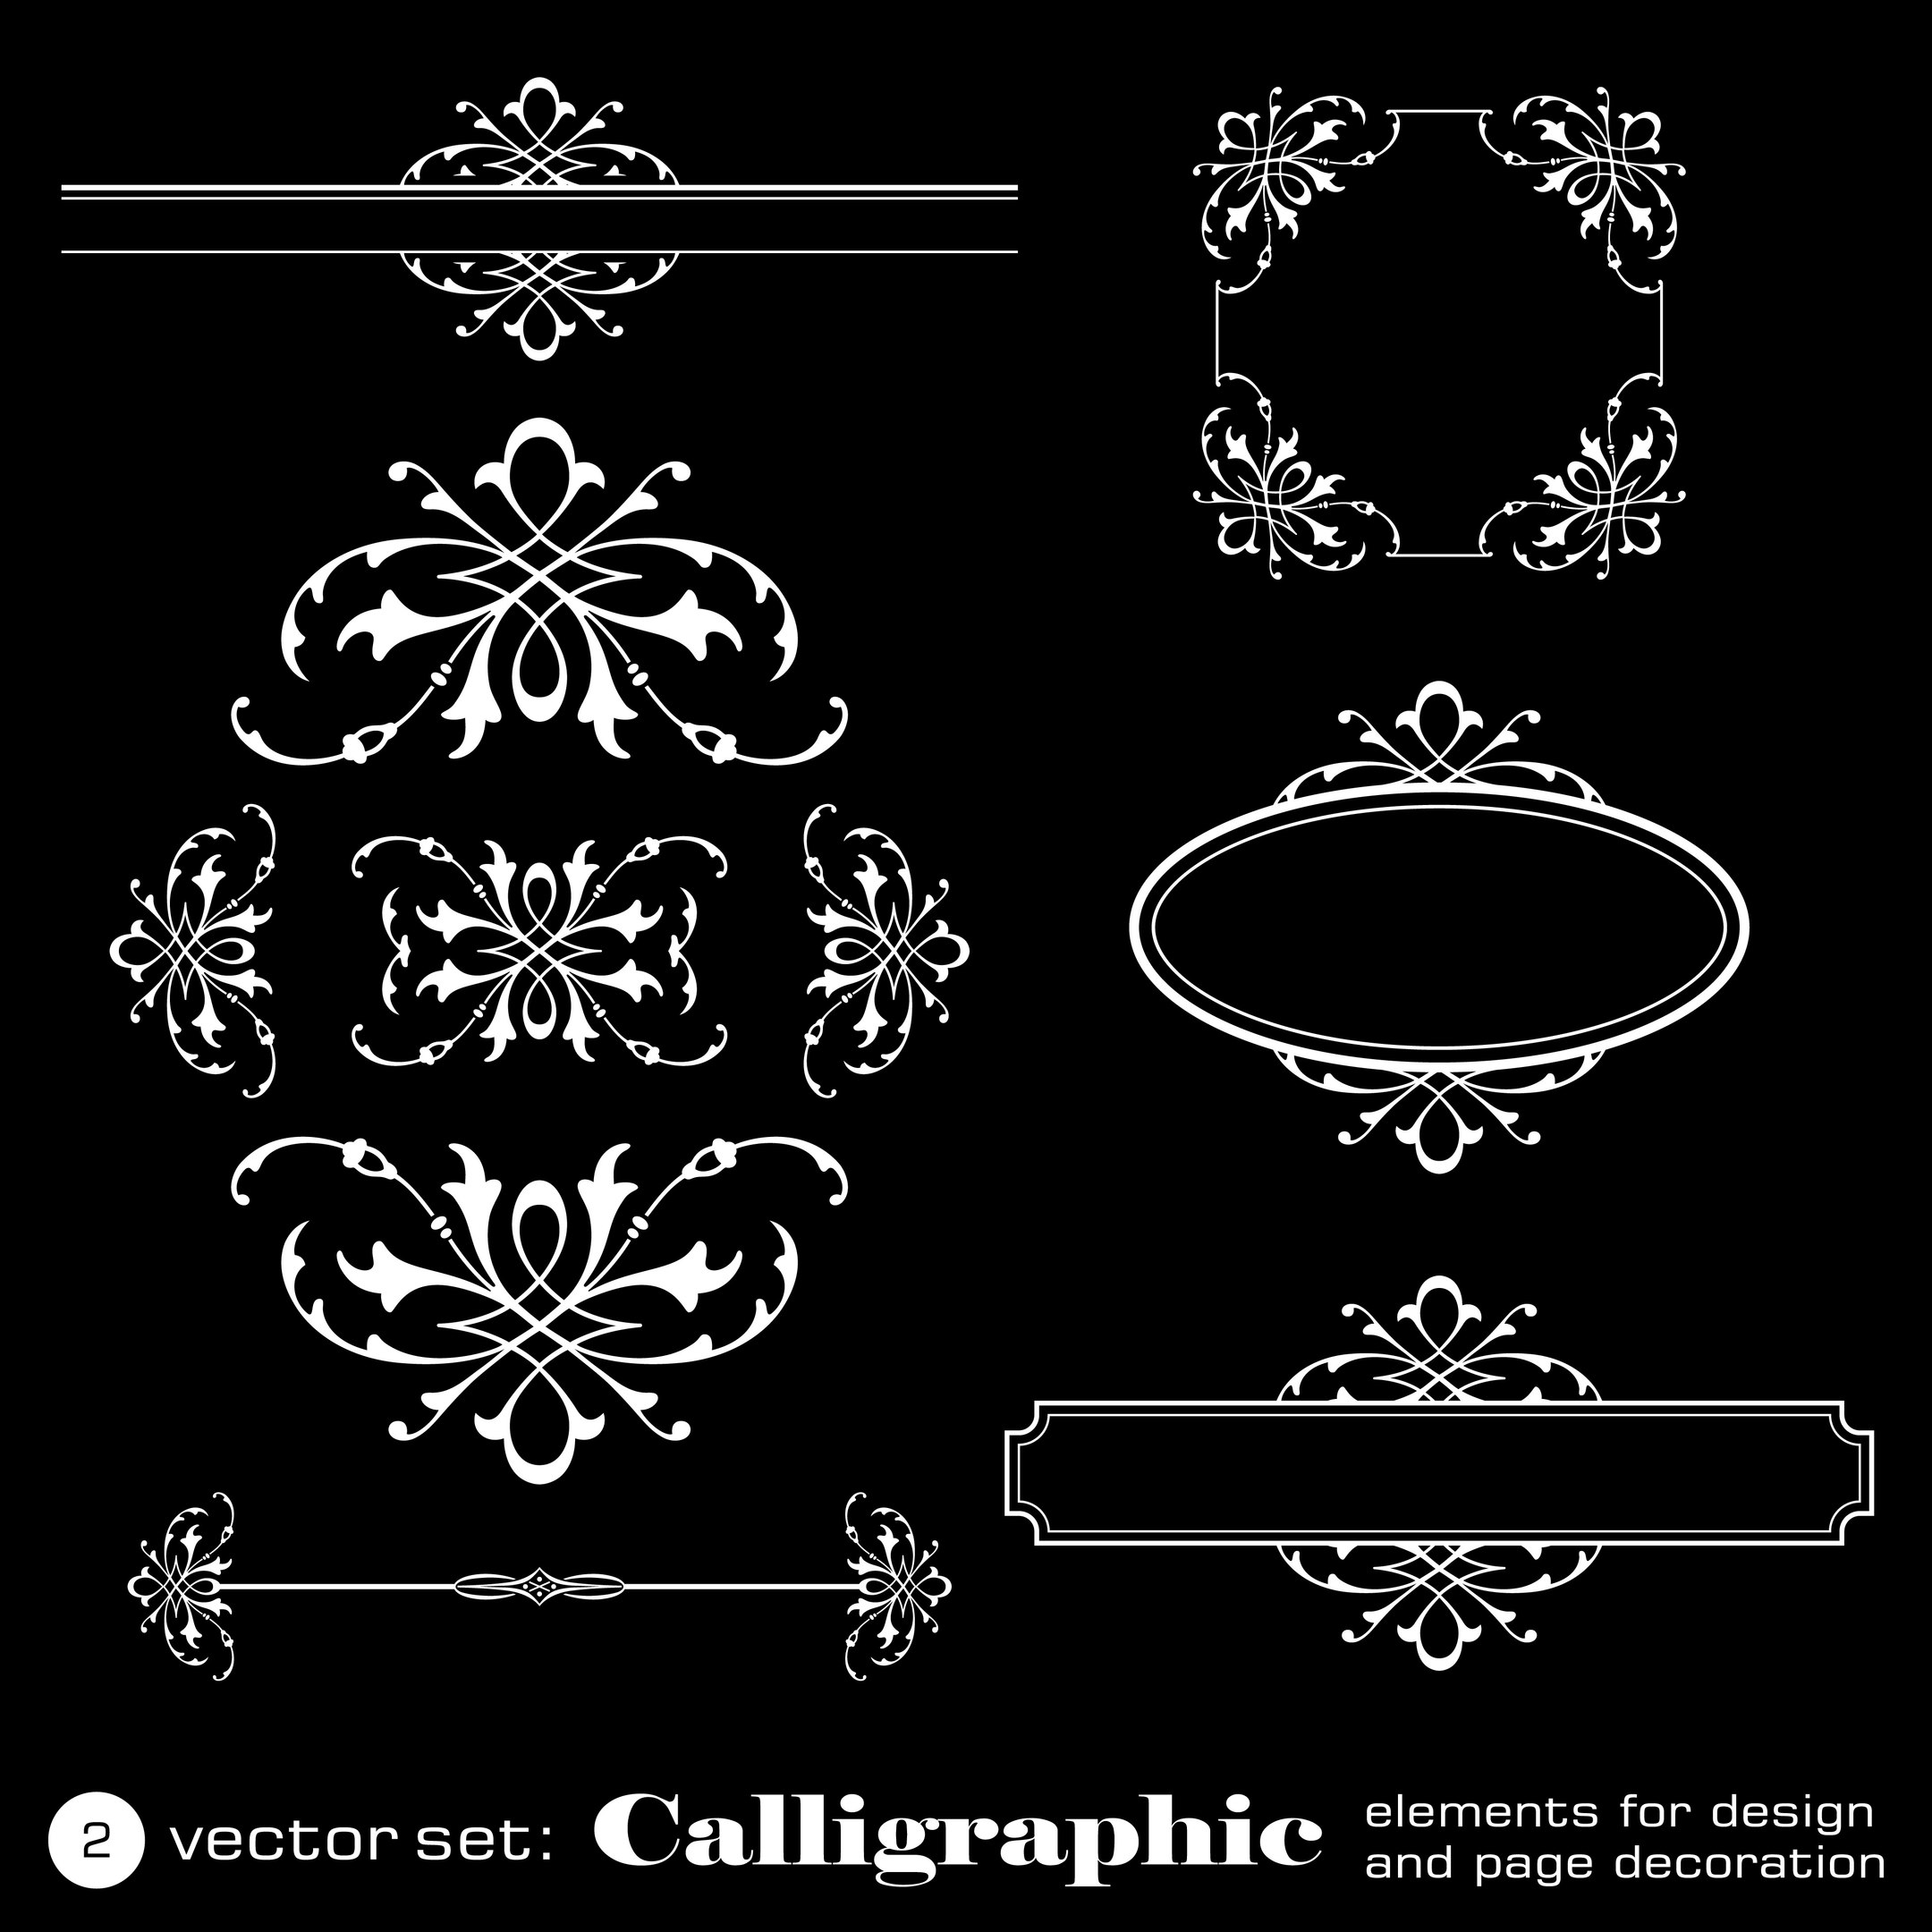 Elementos caligráficos para el diseño sobre fondo negro